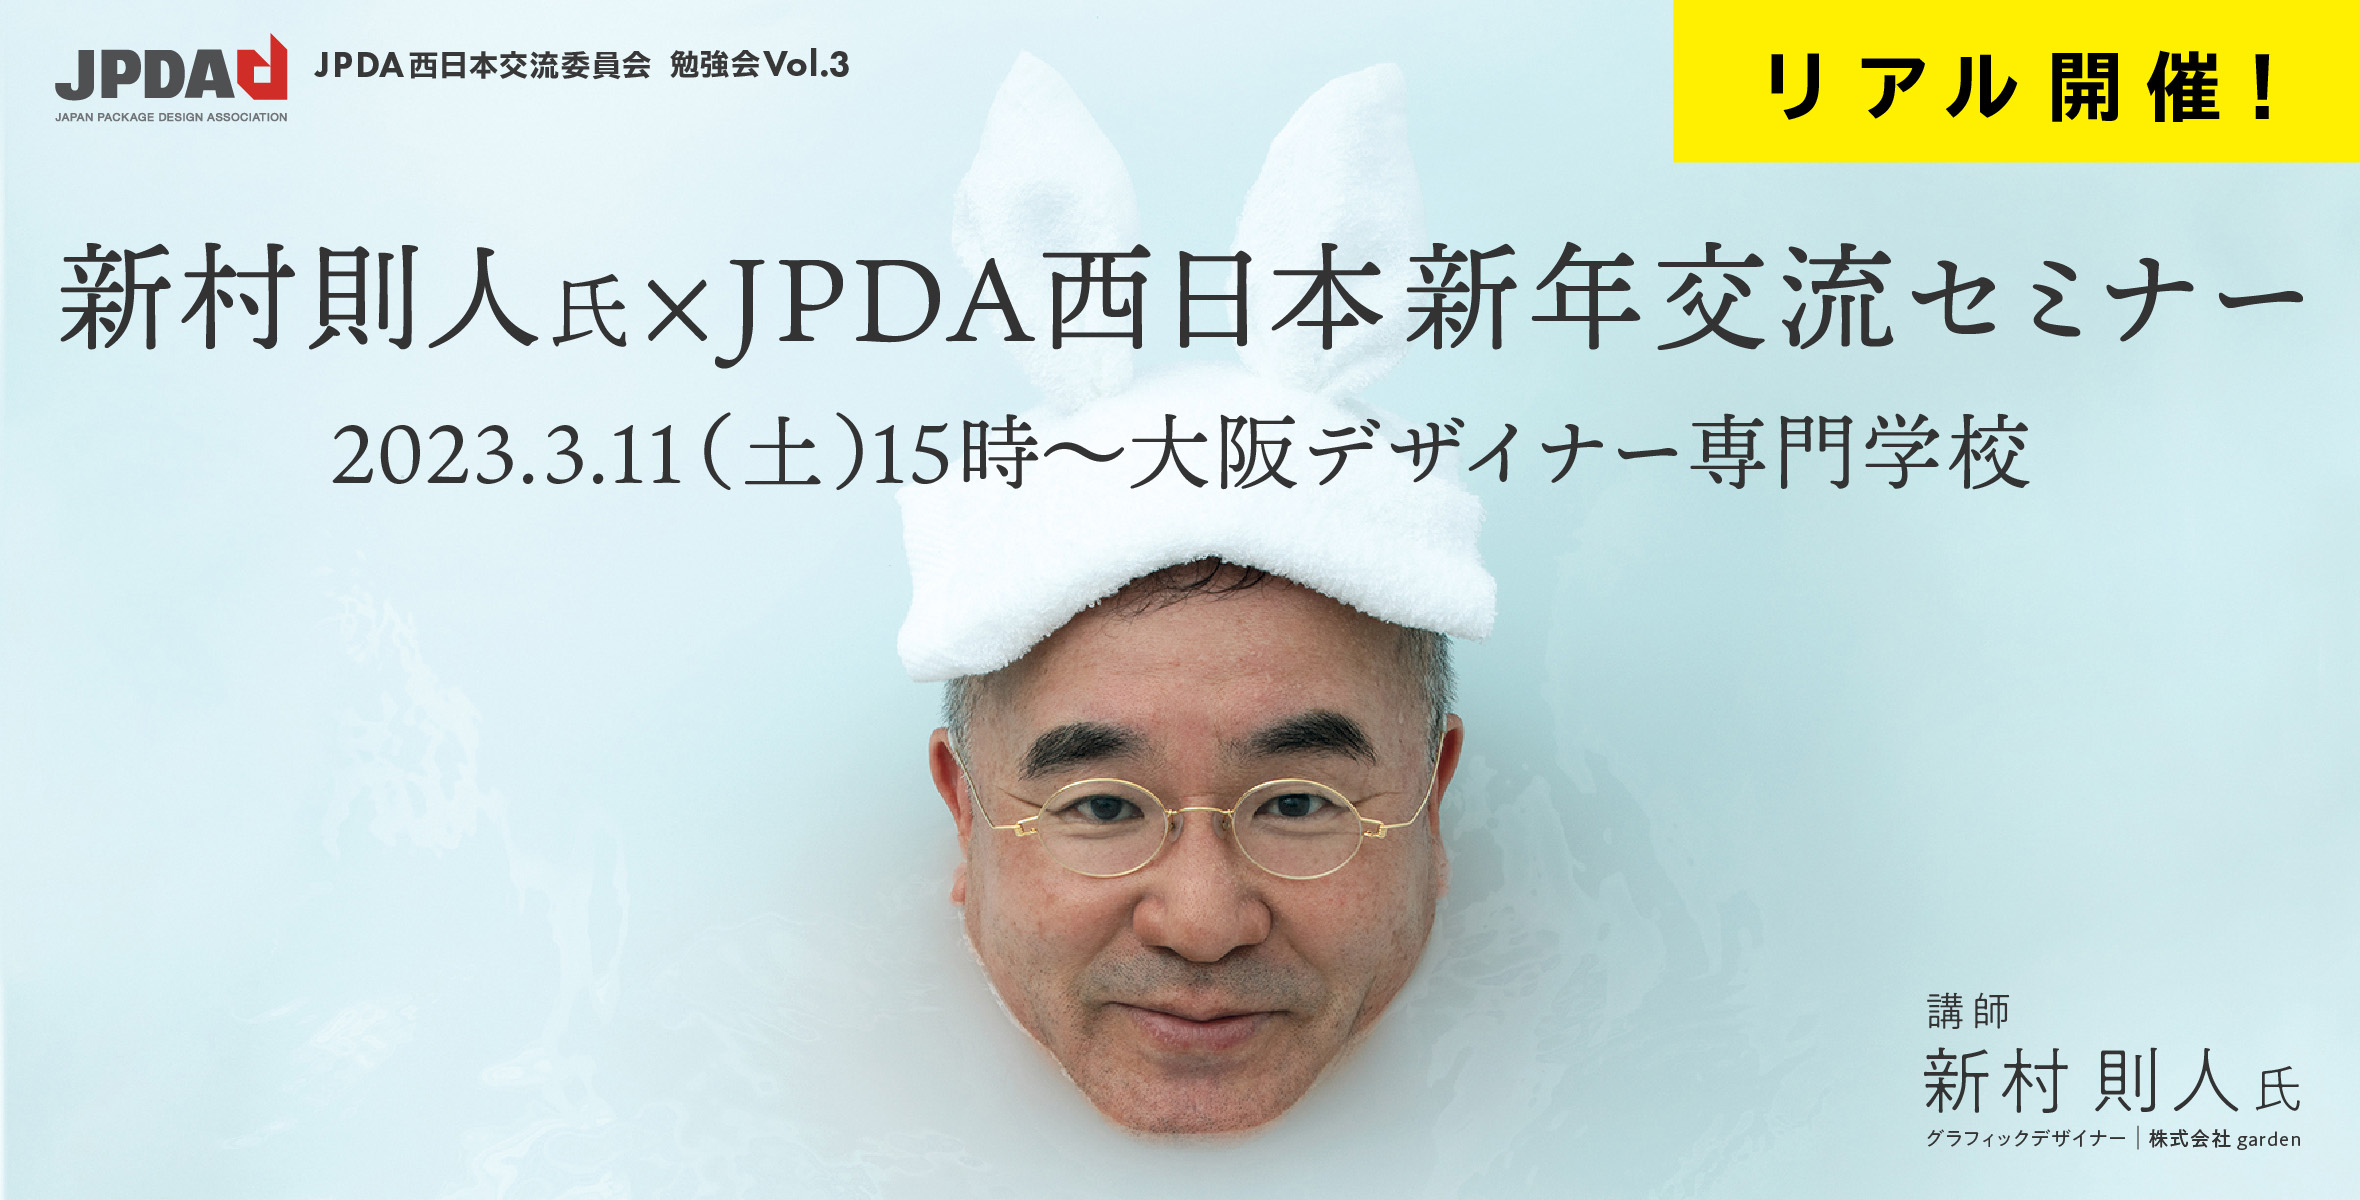 新村則人氏×JPDA西日本新年交流セミナーのイメージ